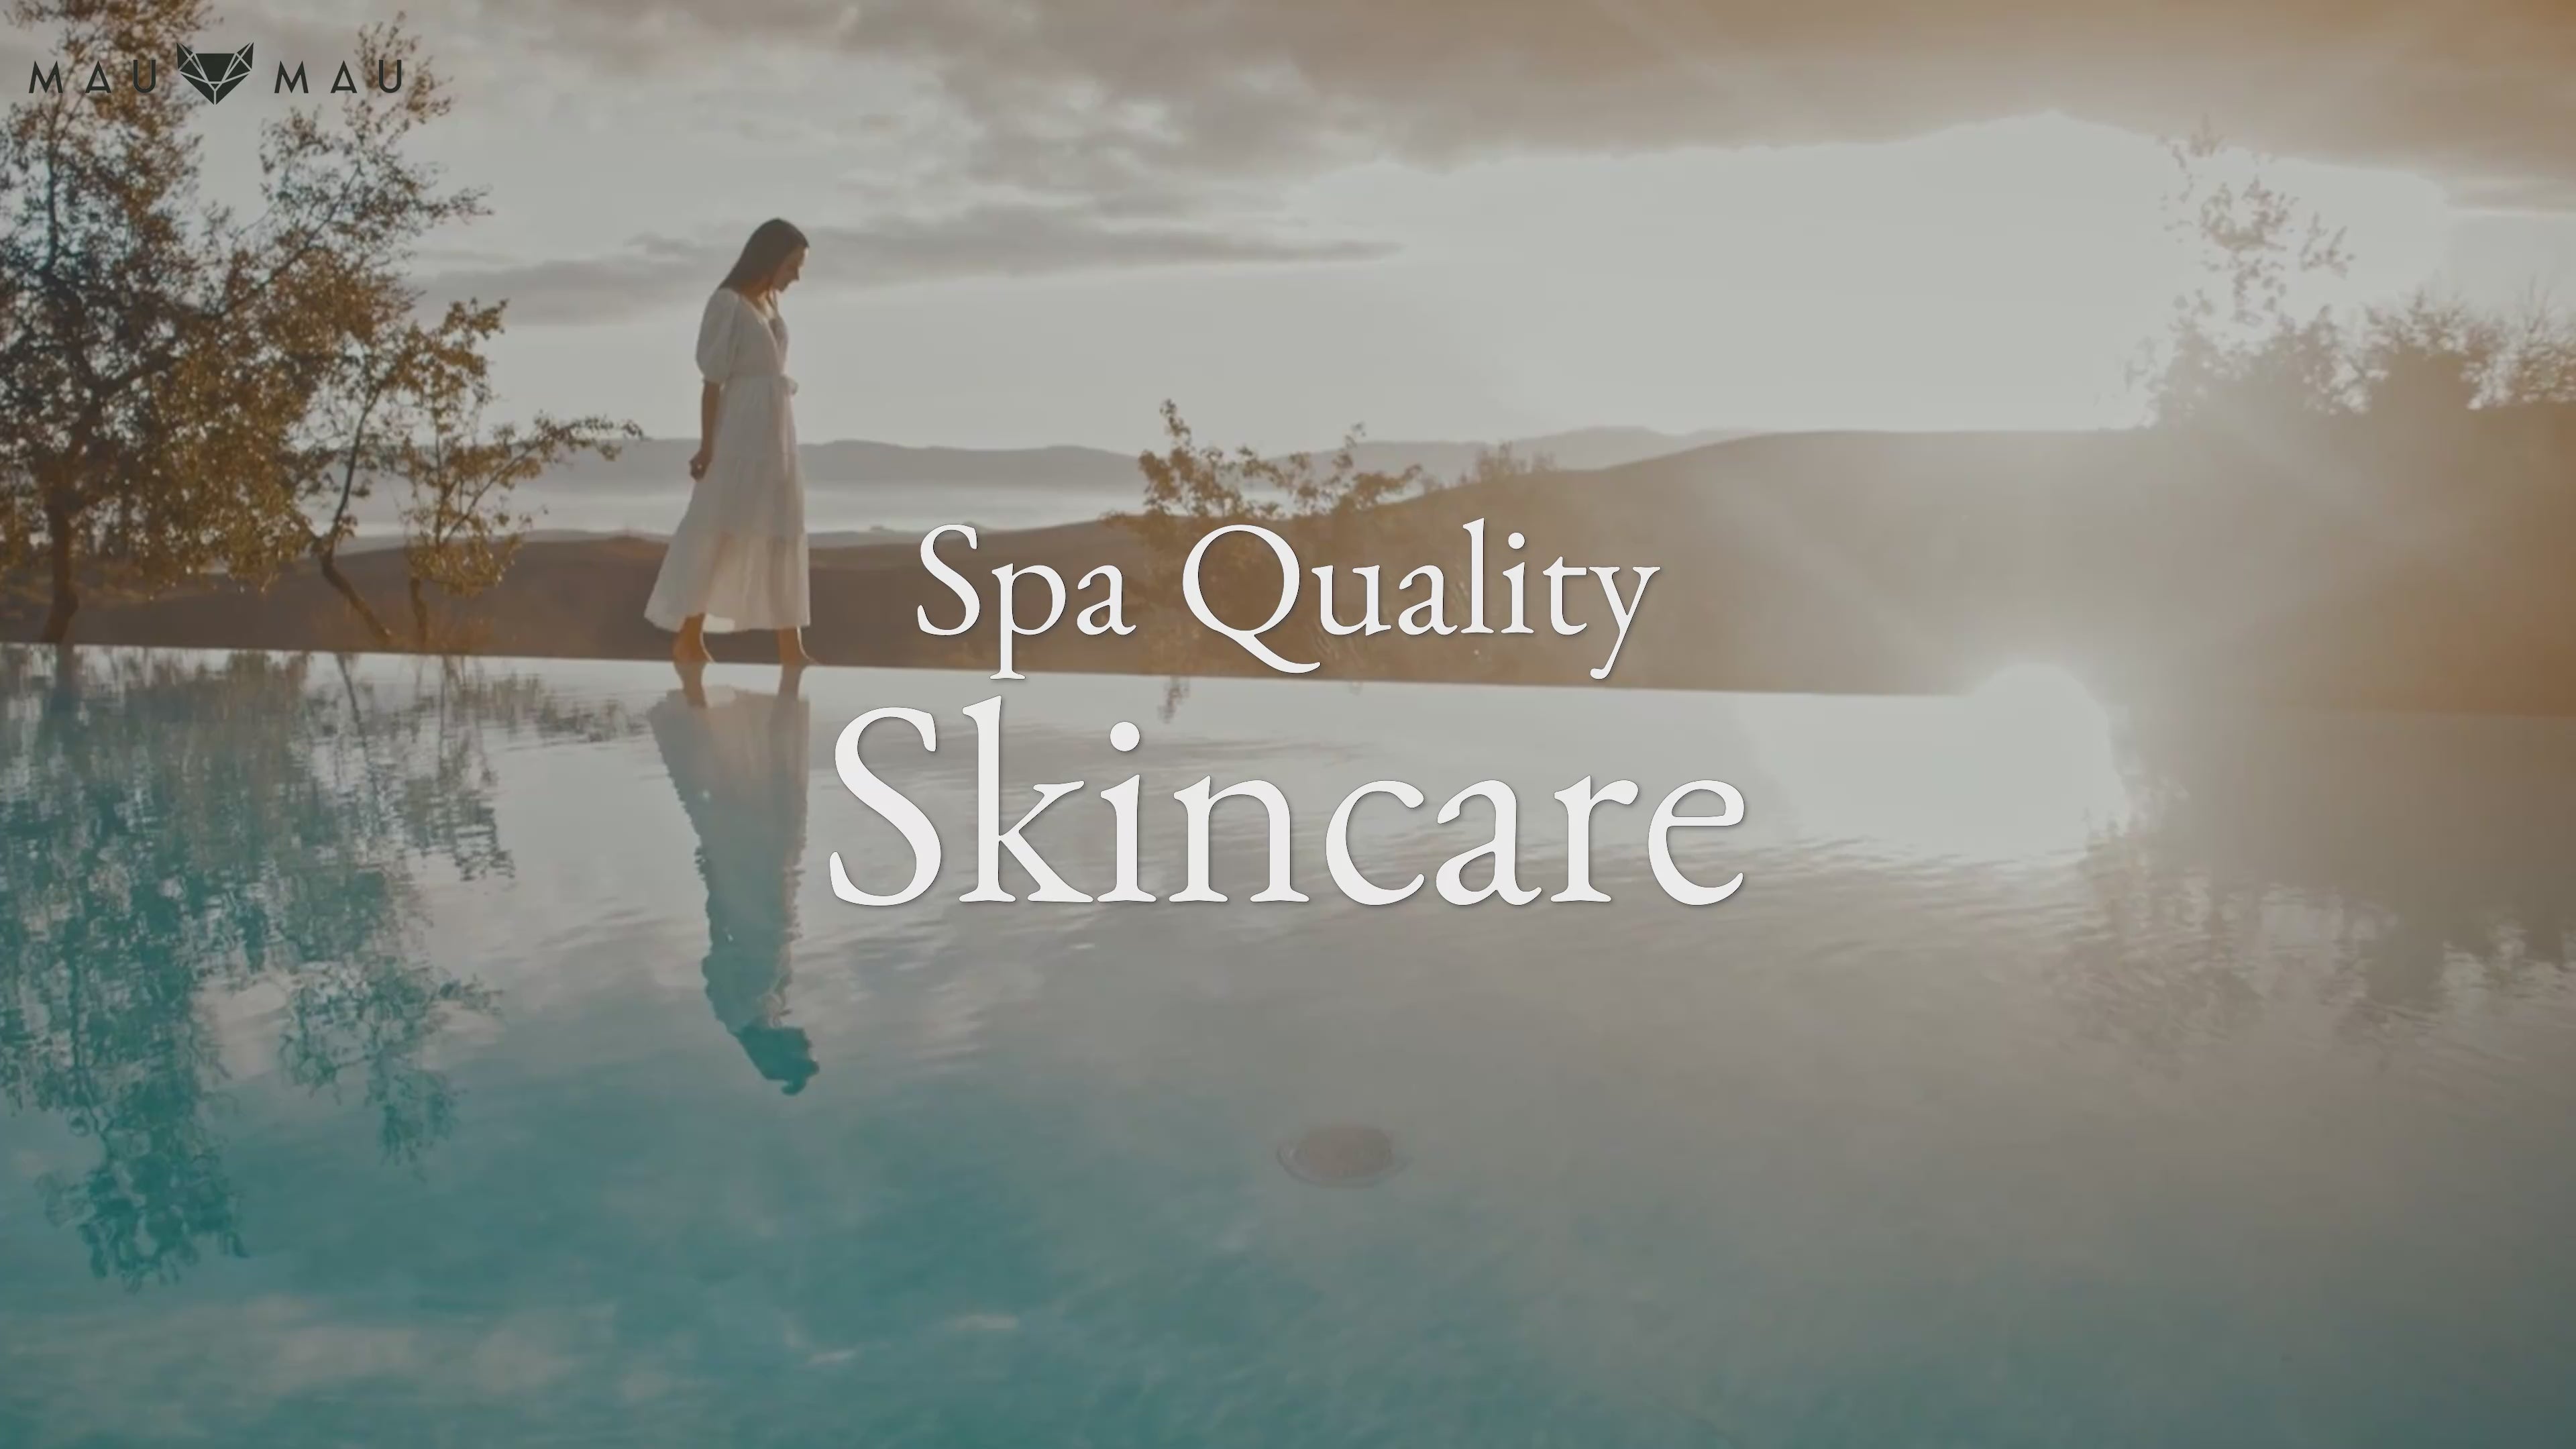 Load video: Mau Mau Features Eteria Skincare